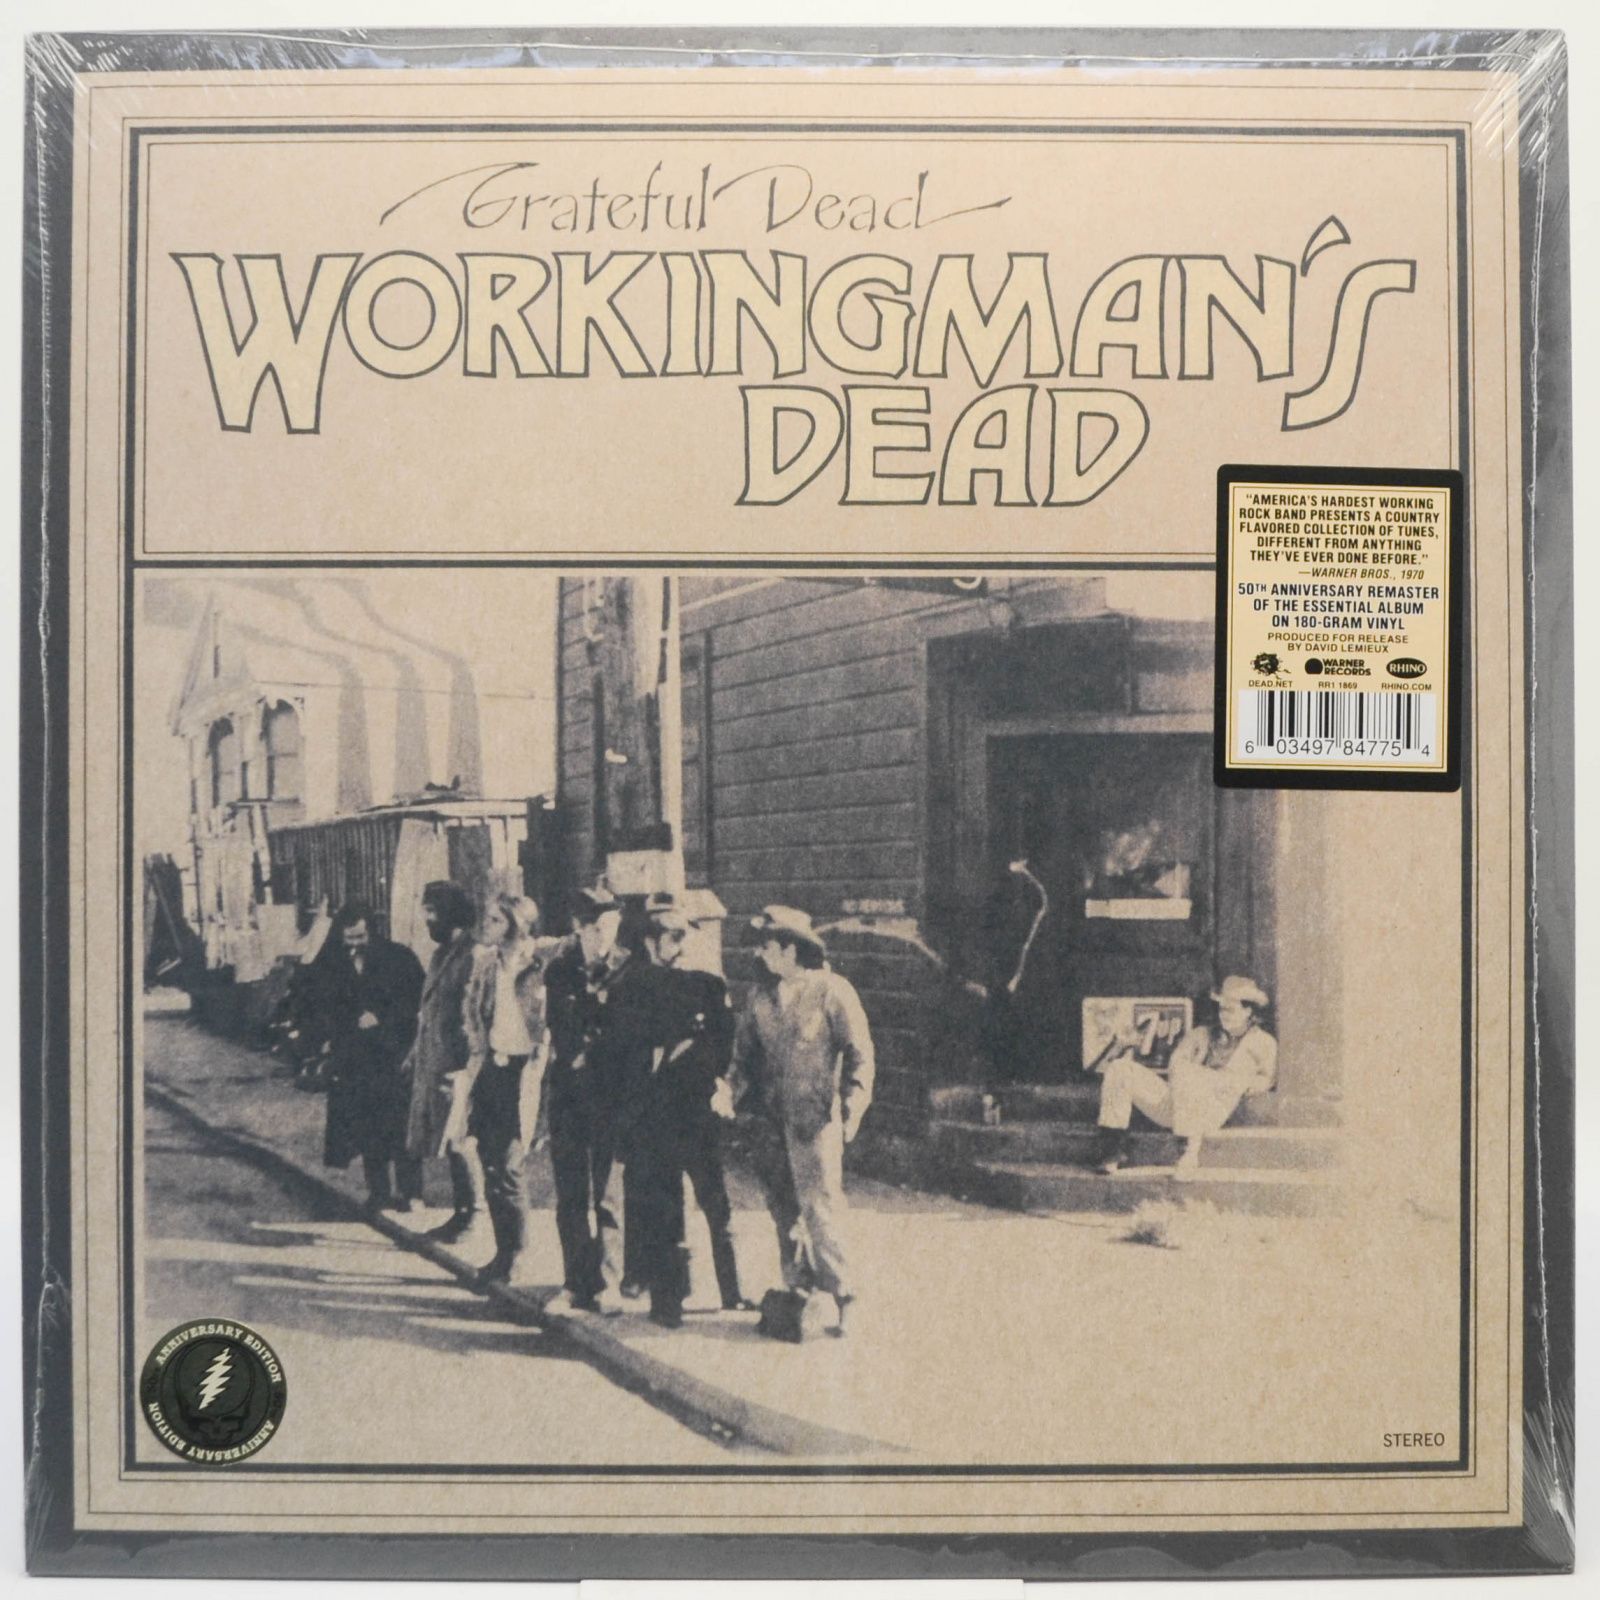 Workingman's Dead, 1970